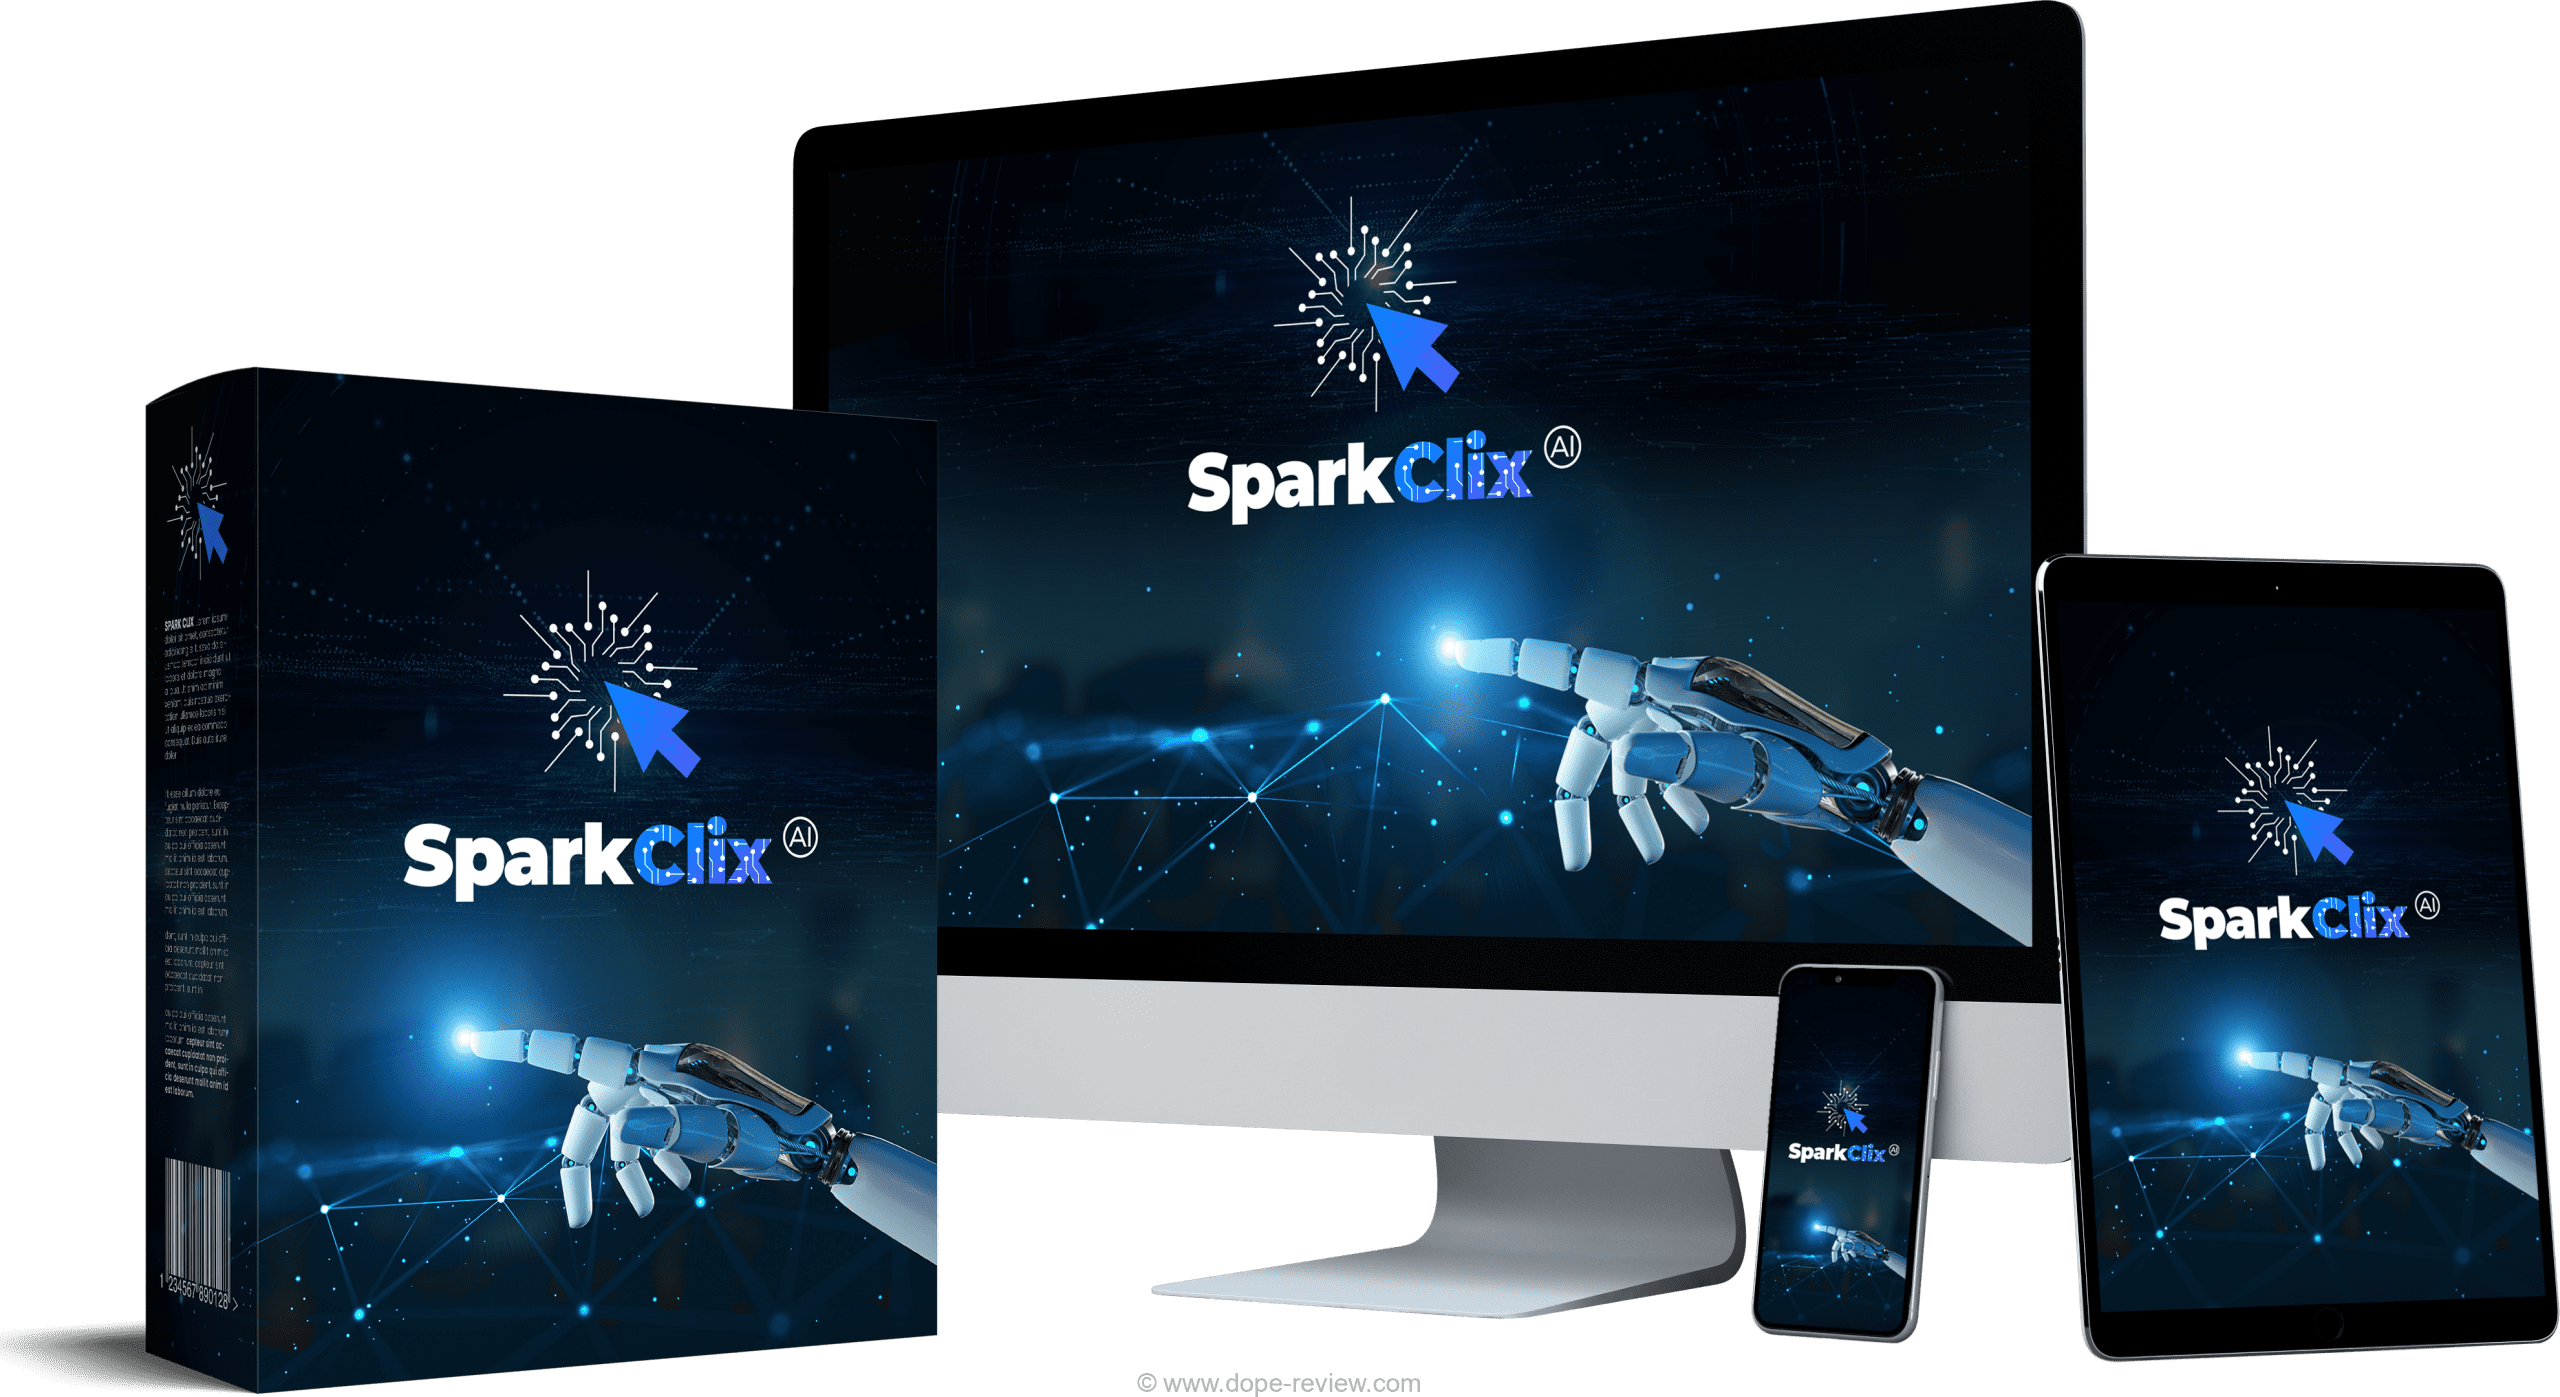 SparkClix